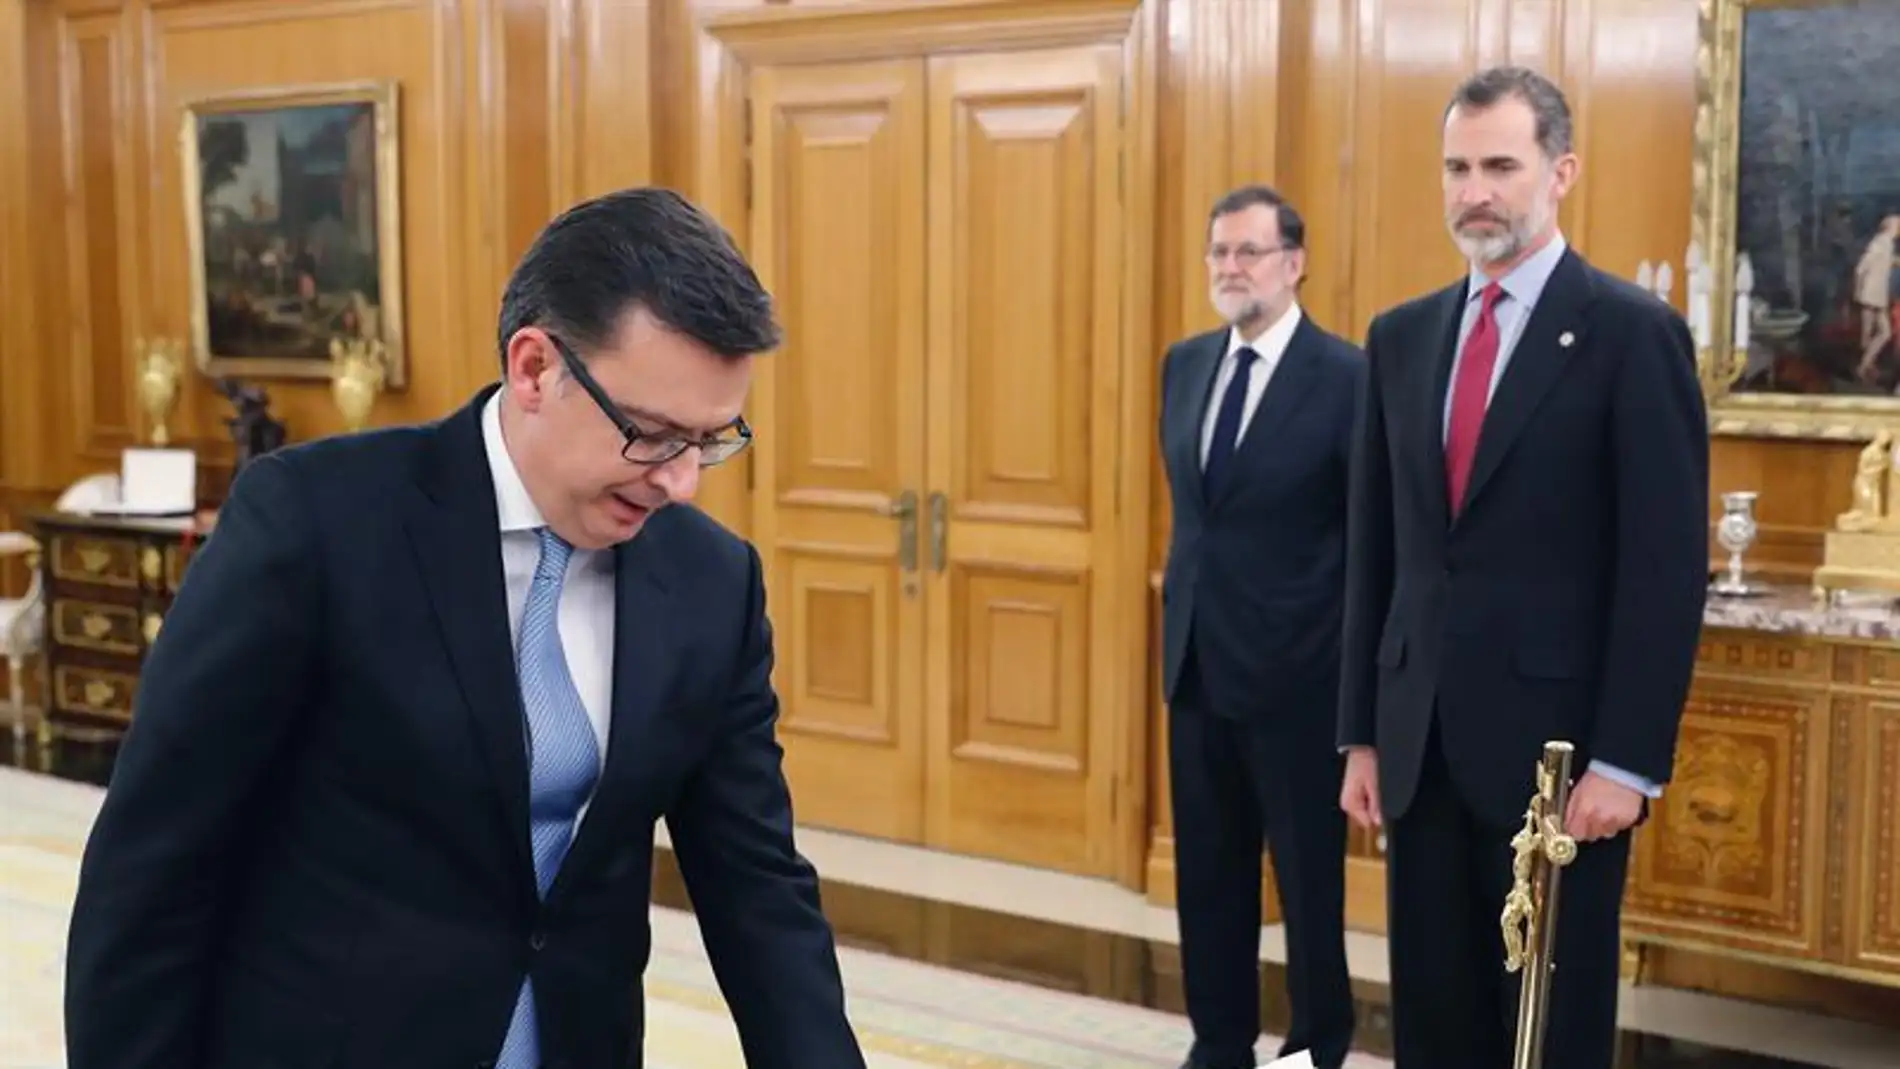 Román Escolano jura el cargo como ministro de Economía, Industria y competitividad ante el Rey y en presencia de Rajoy